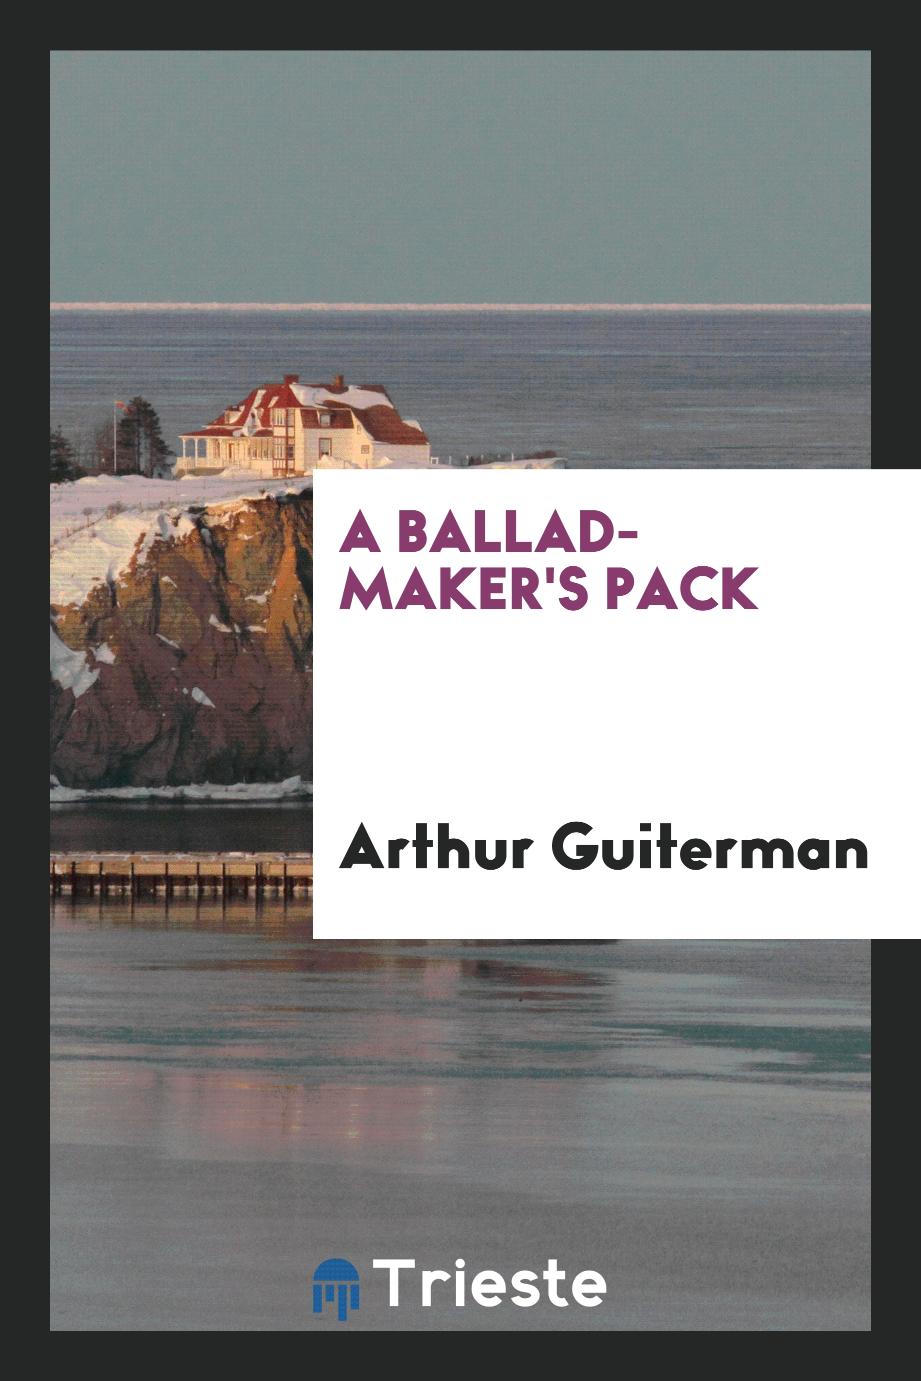 A ballad-maker's pack